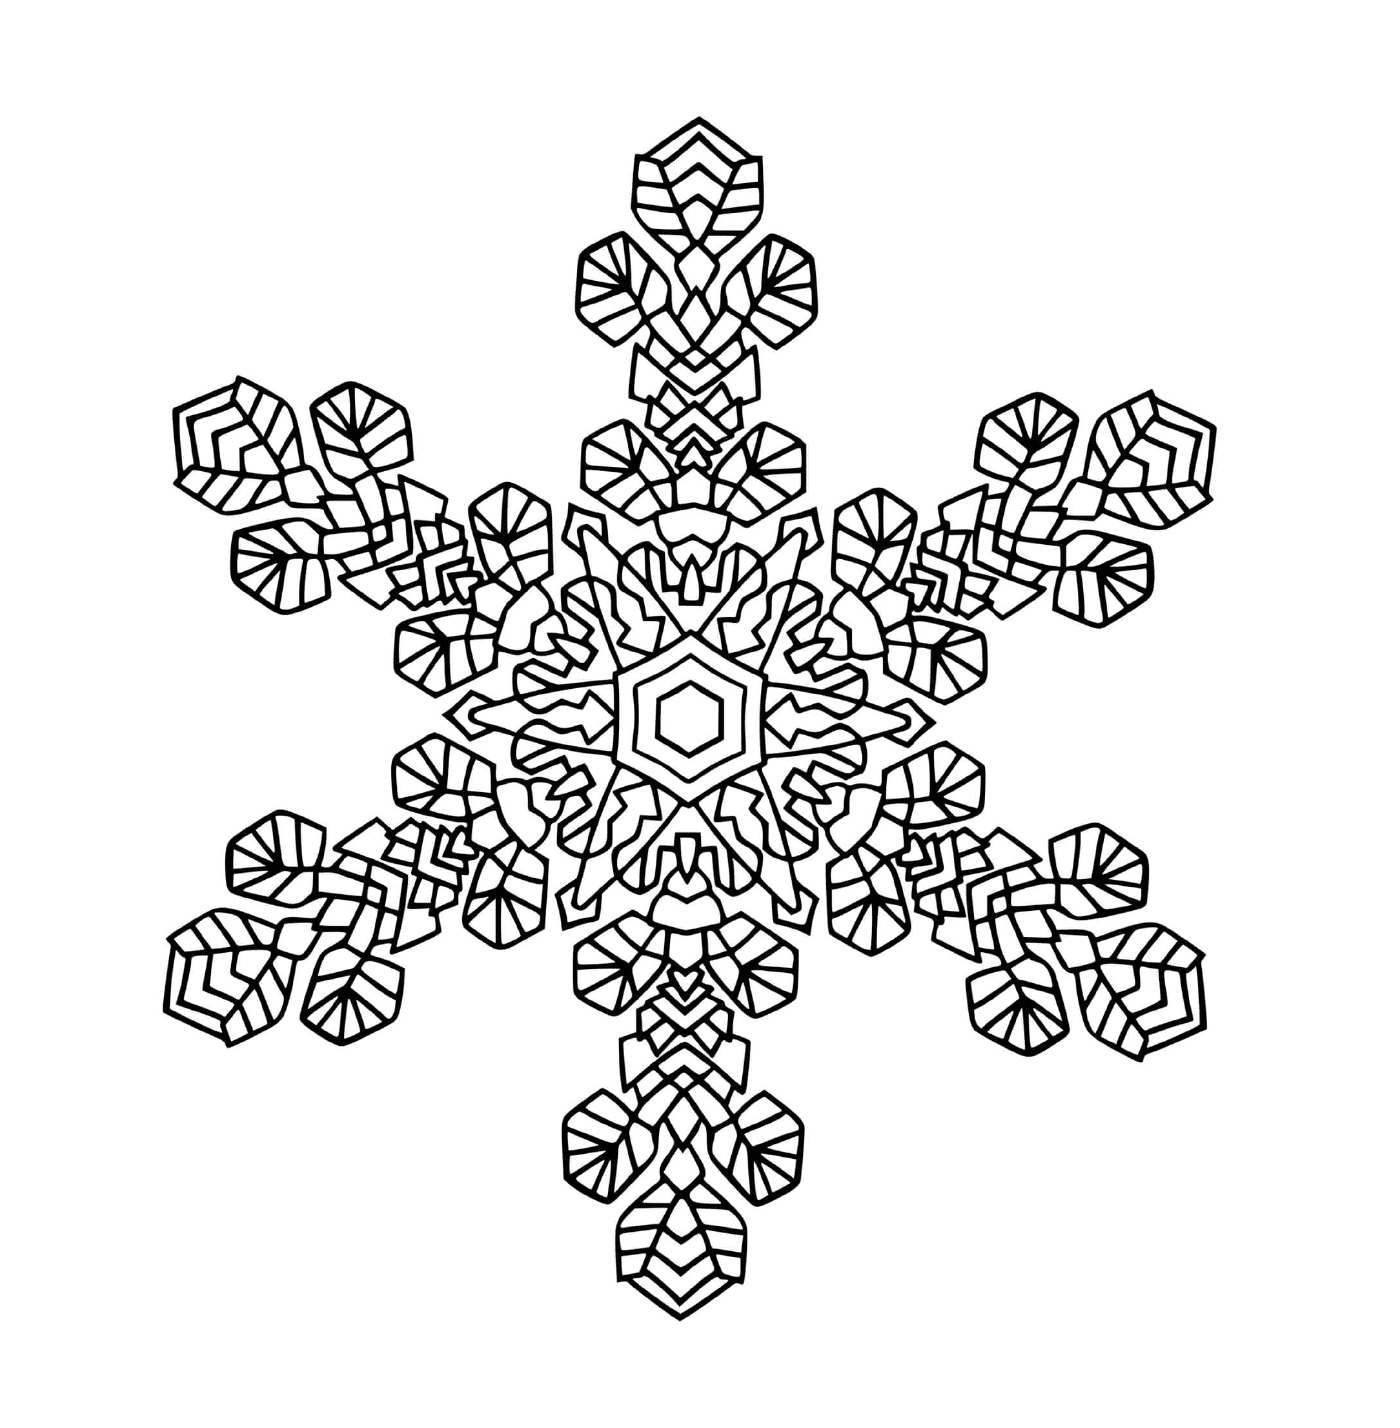   Un magnifique flocon de neige en mandala 